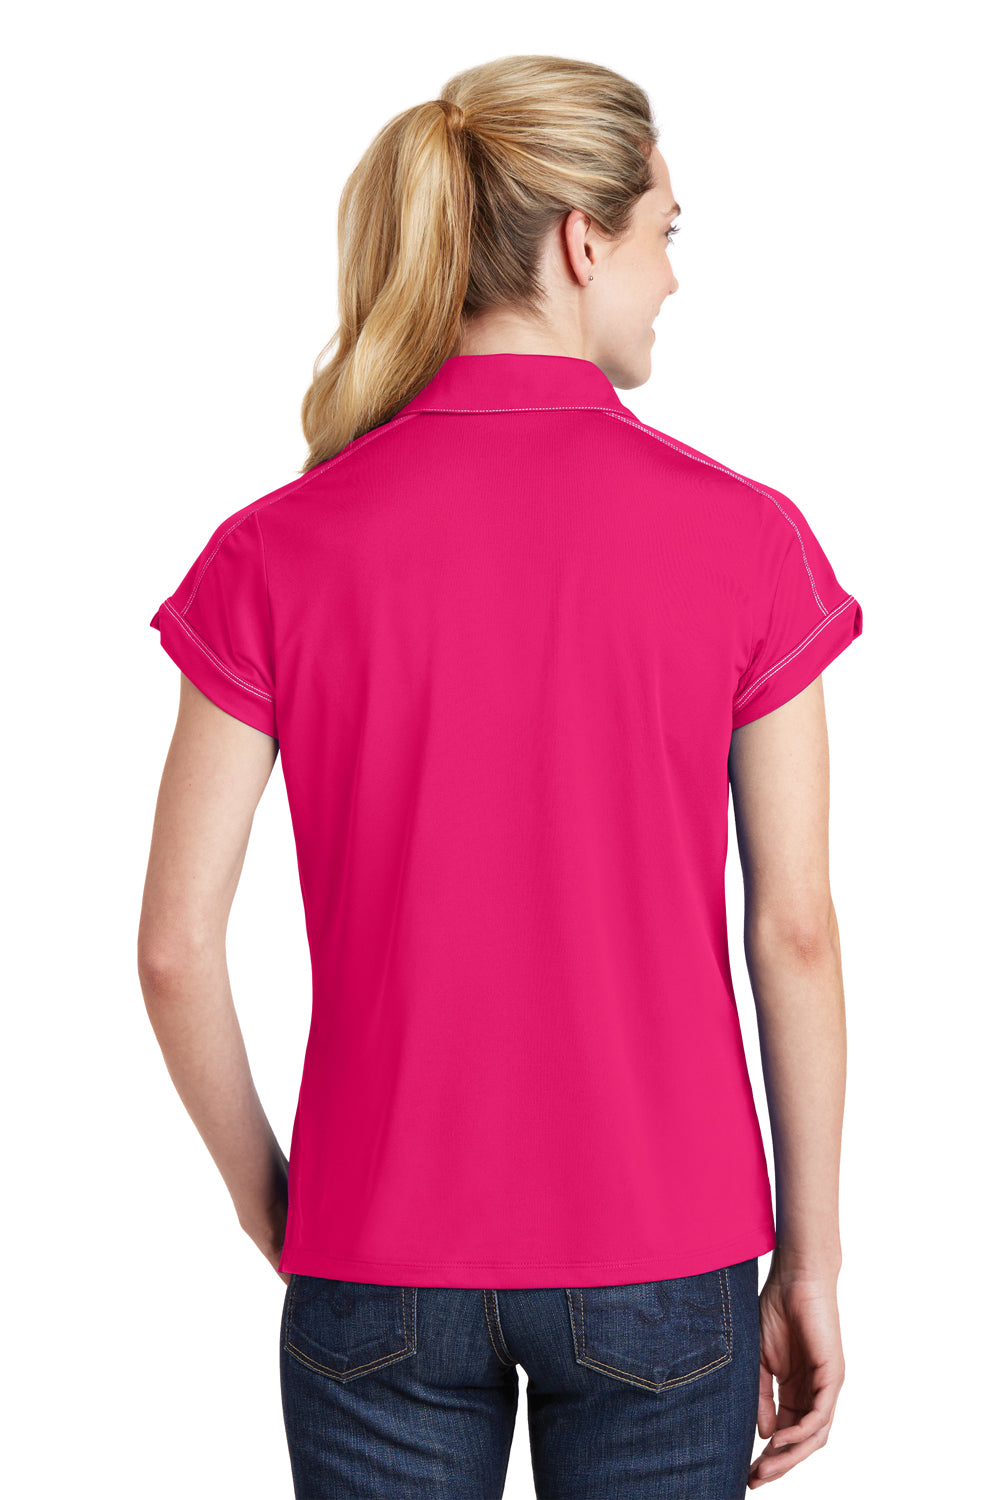 Sport-Tek LST659 Womens Sport-Wick Moisture Wicking Short Sleeve Polo Shirt Fuchsia Pink Back